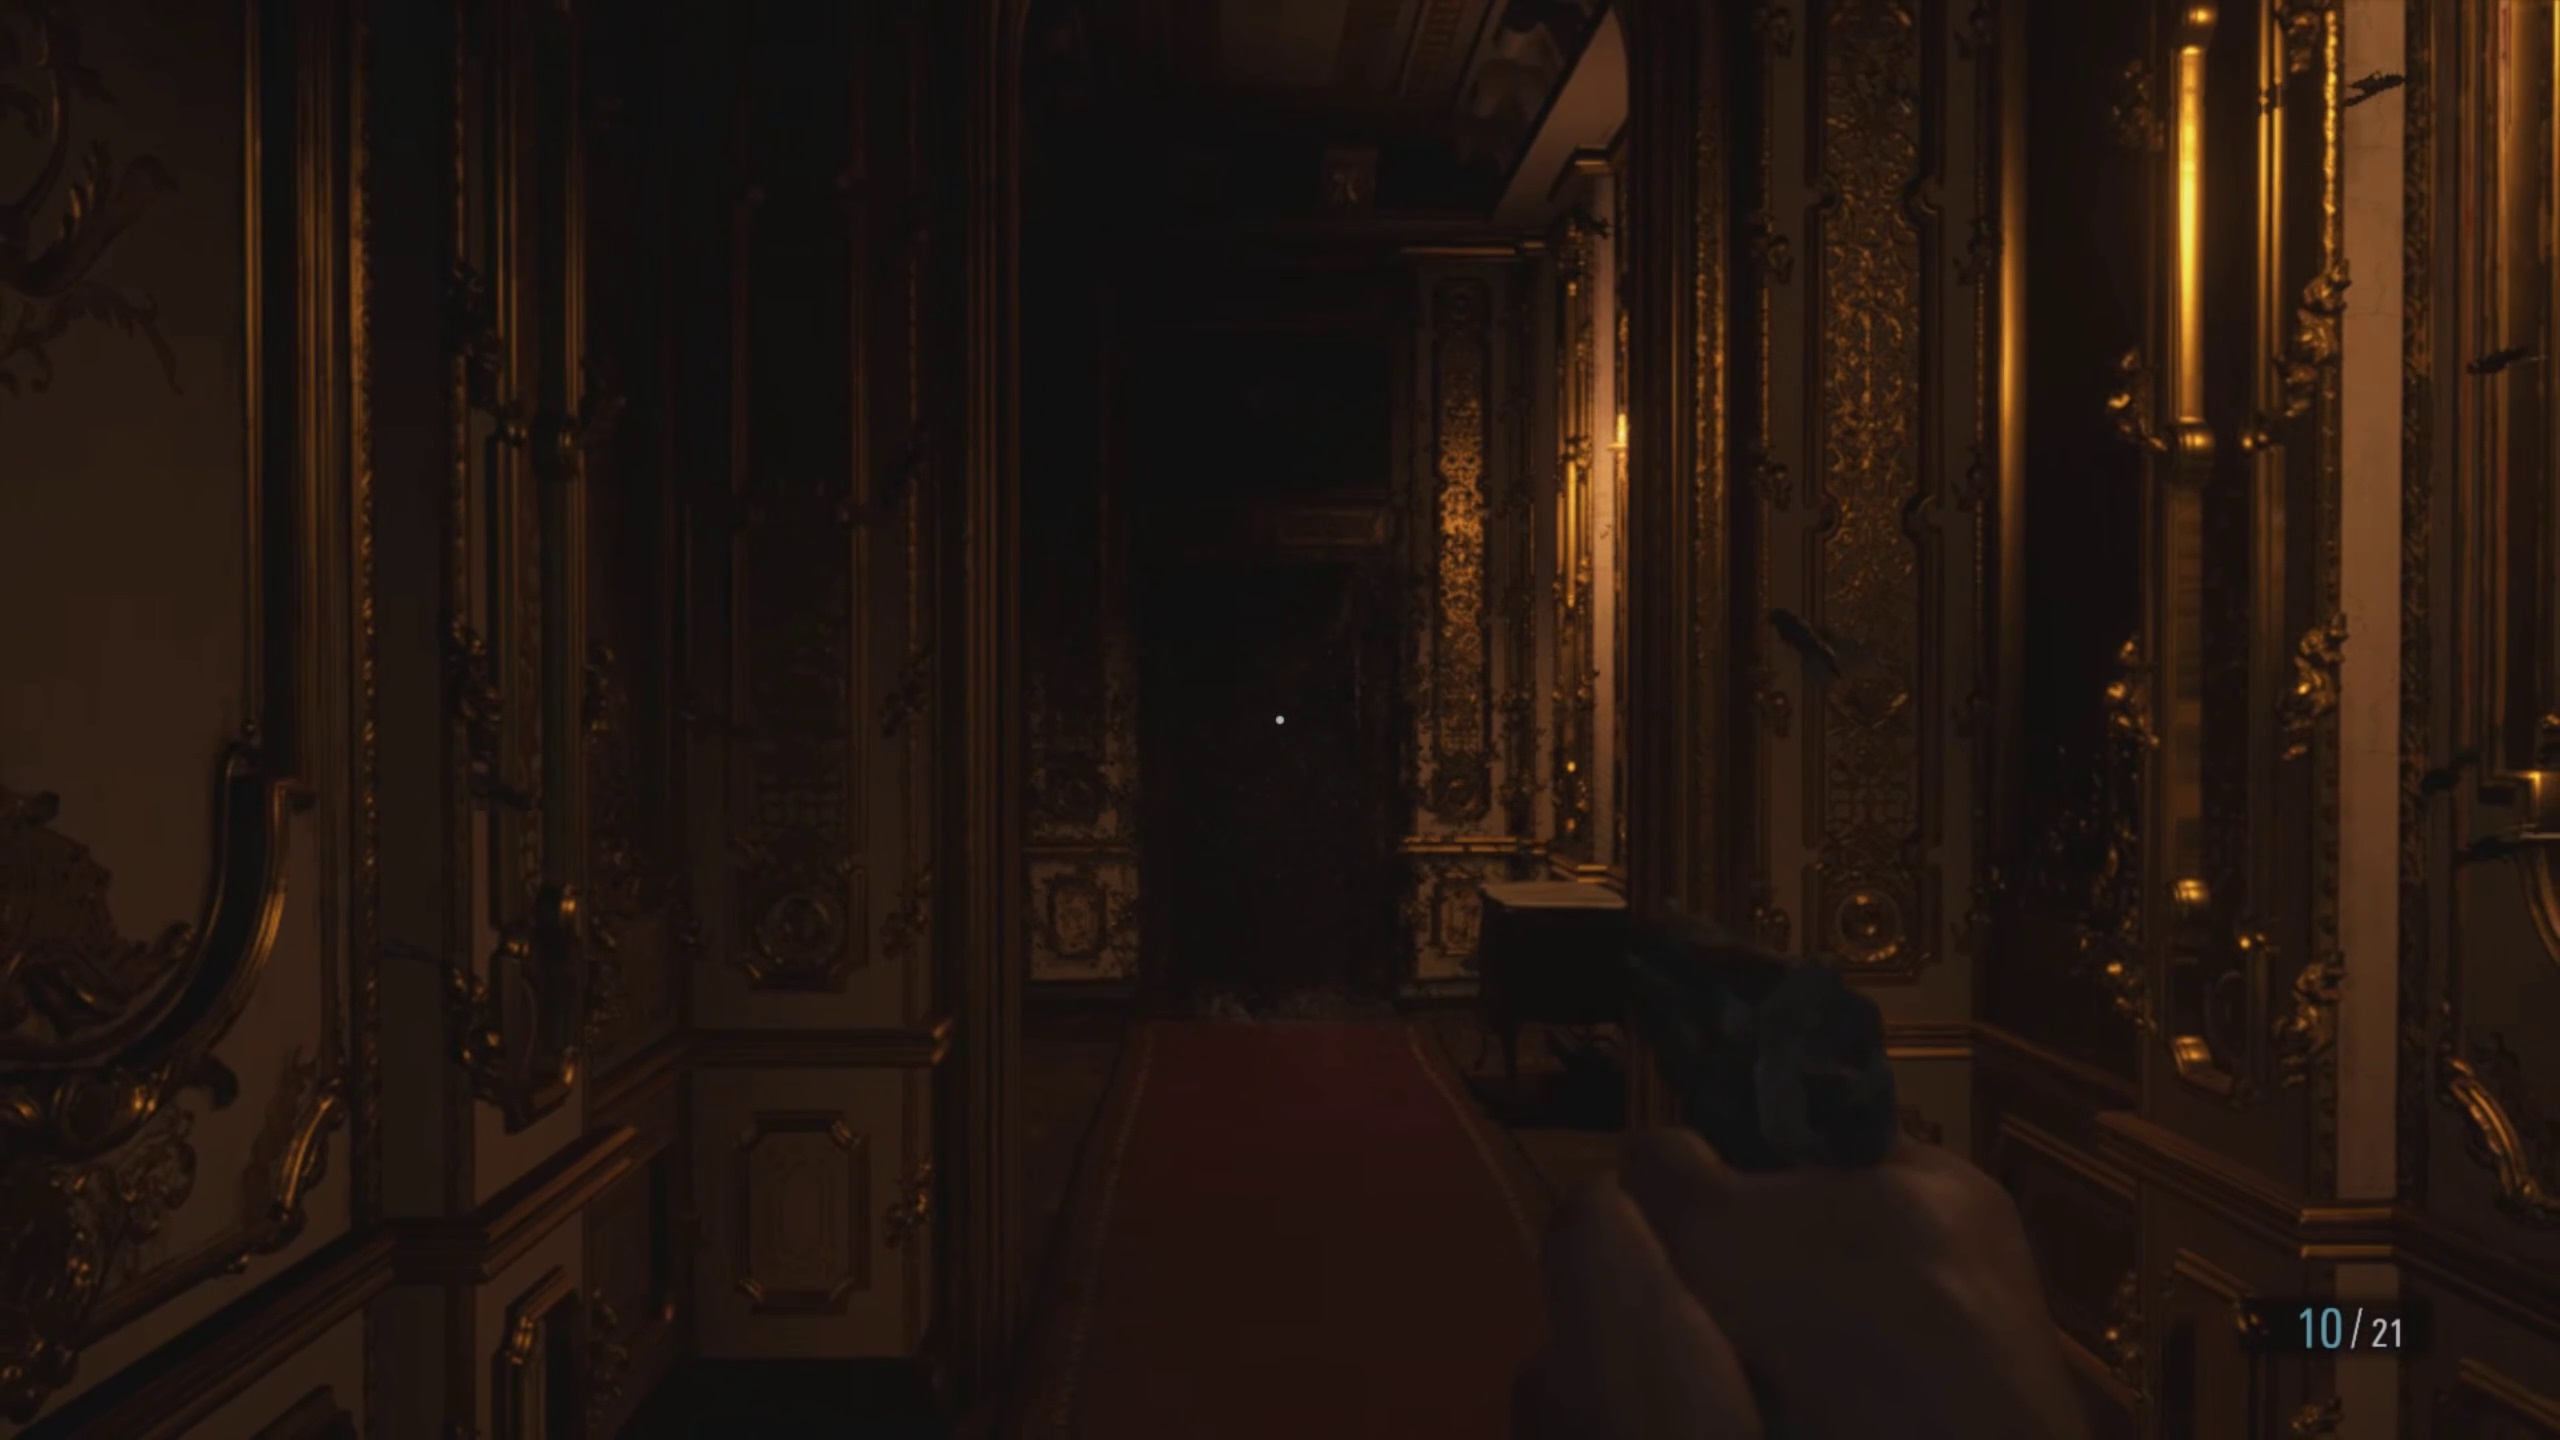 pointing gun down baroque castle hallway